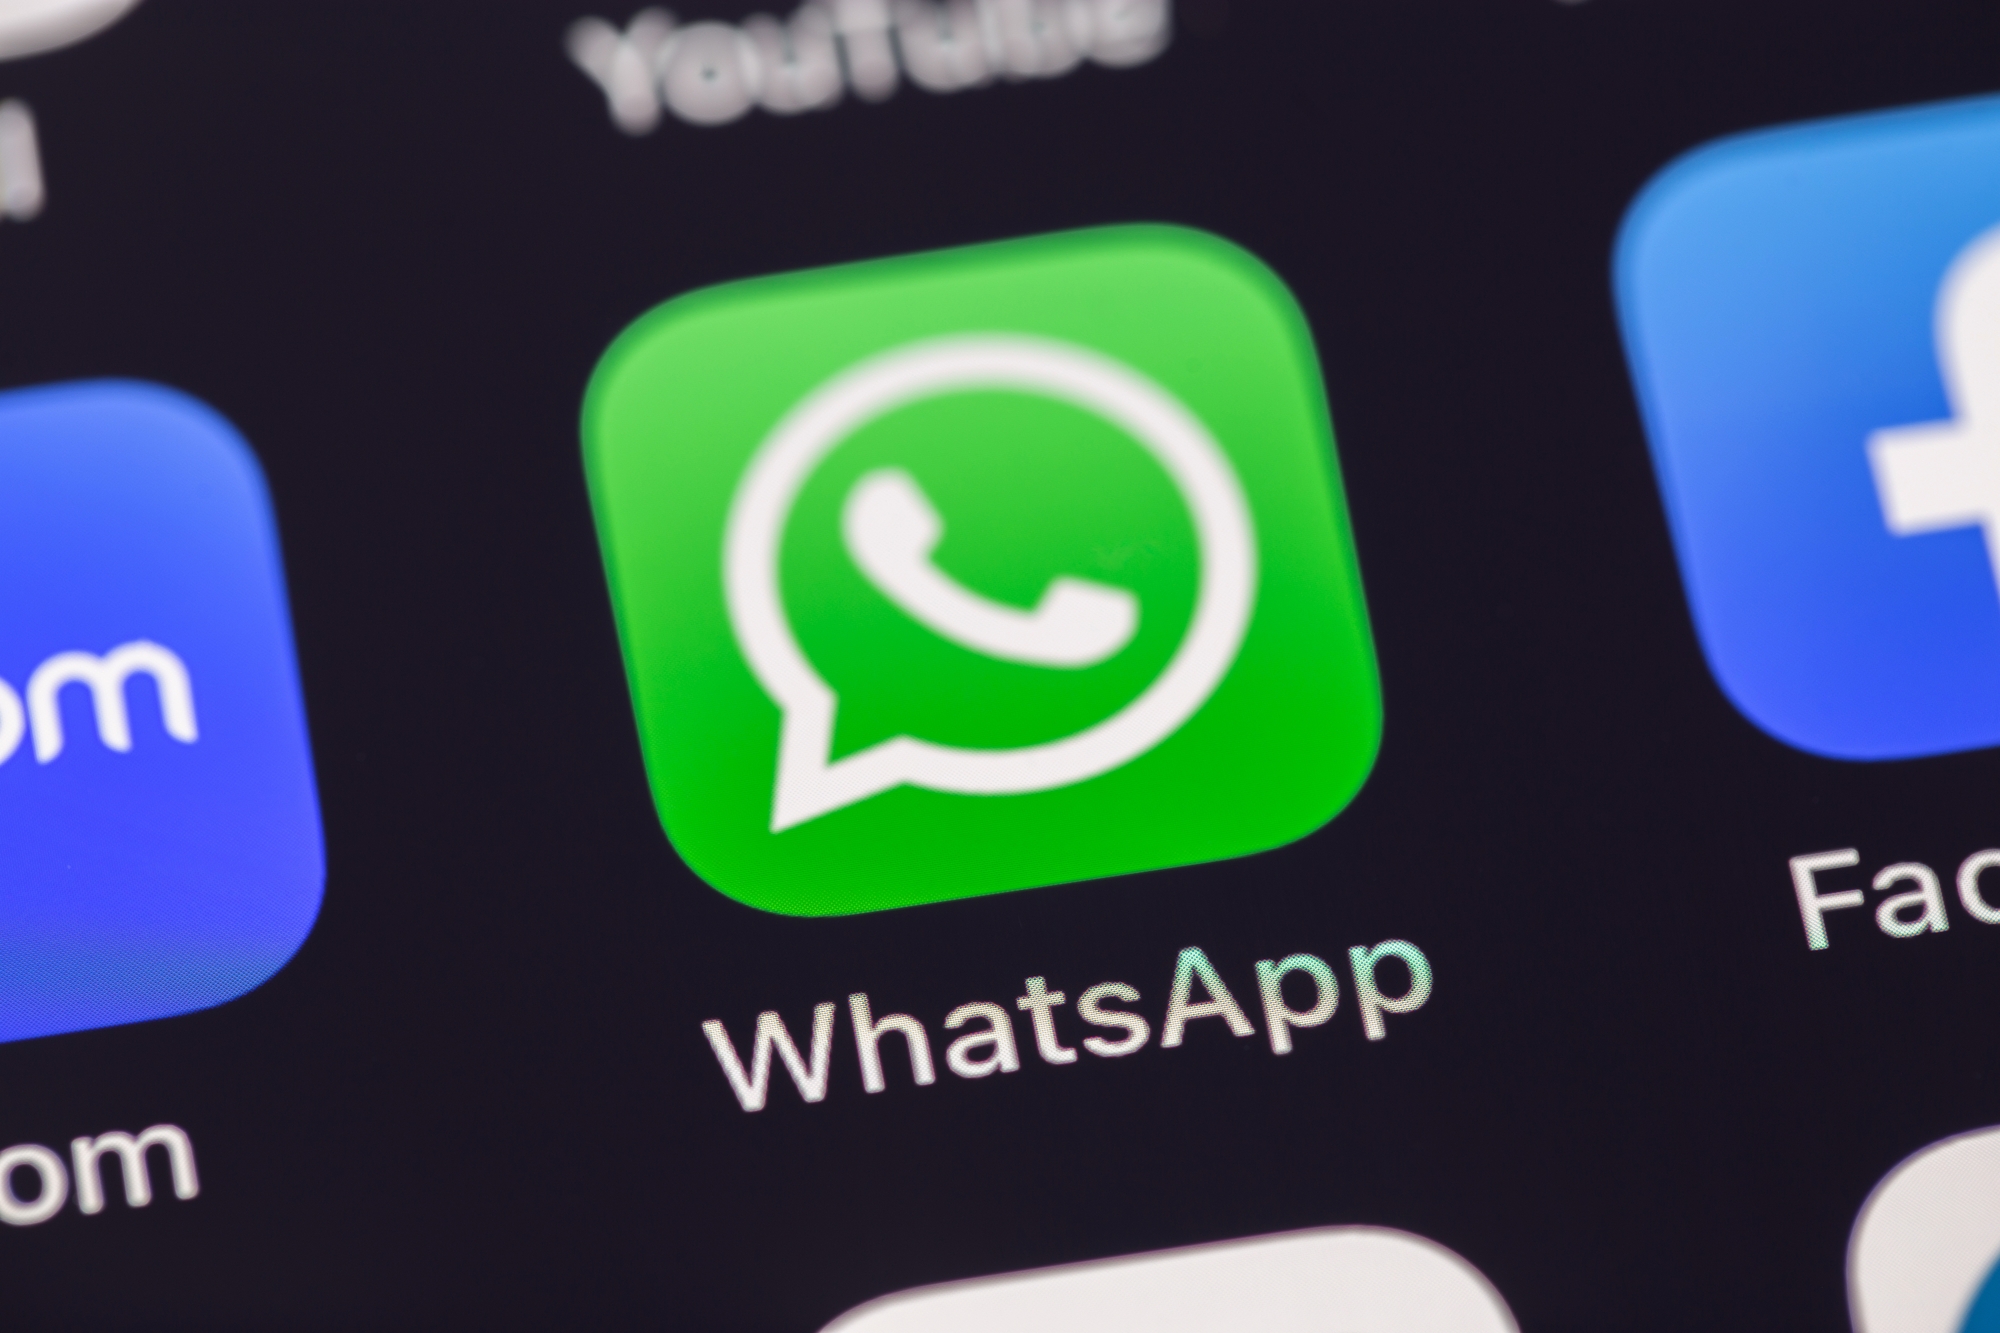 WhatsApp pourra bientôt prendre en charge d'autres services de messagerie